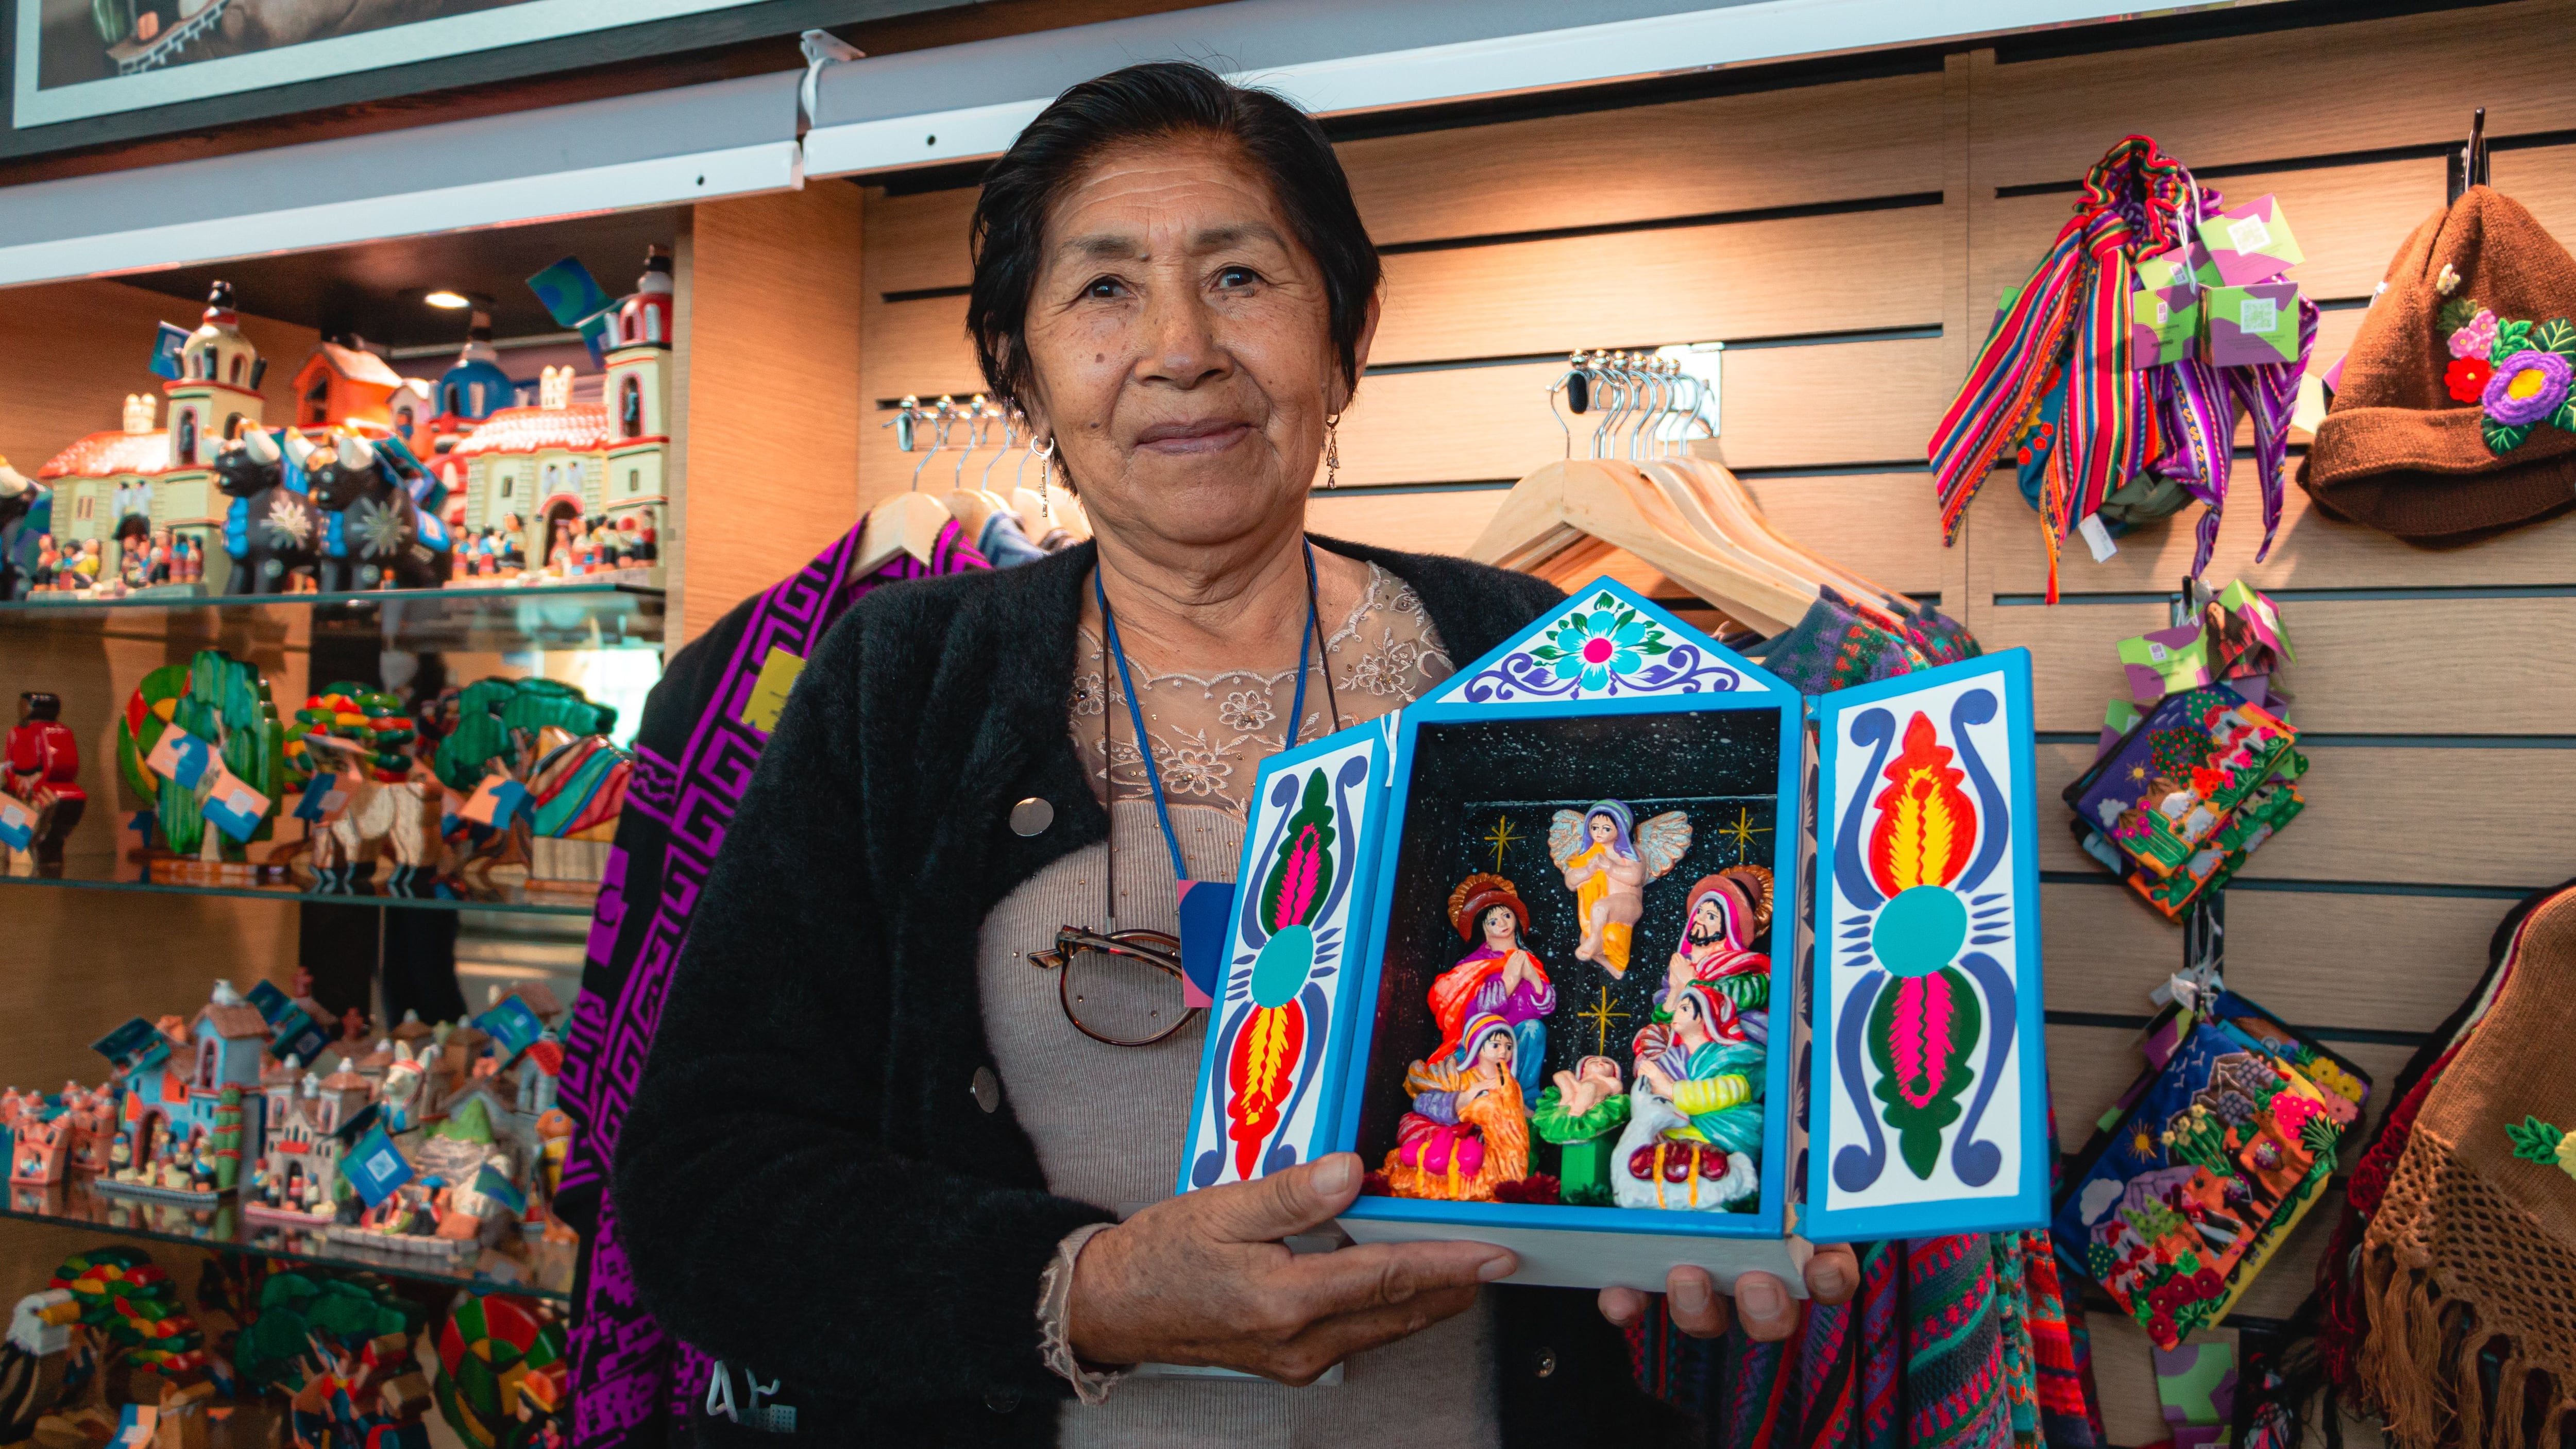 La familia Espinoza Urbano, donde Lourdes junto a su hijo Saúl y sus nietos, fabrican los tradicionales retablos ayacuchanos, una de las expresiones artísticas más reconocidas del Perú.